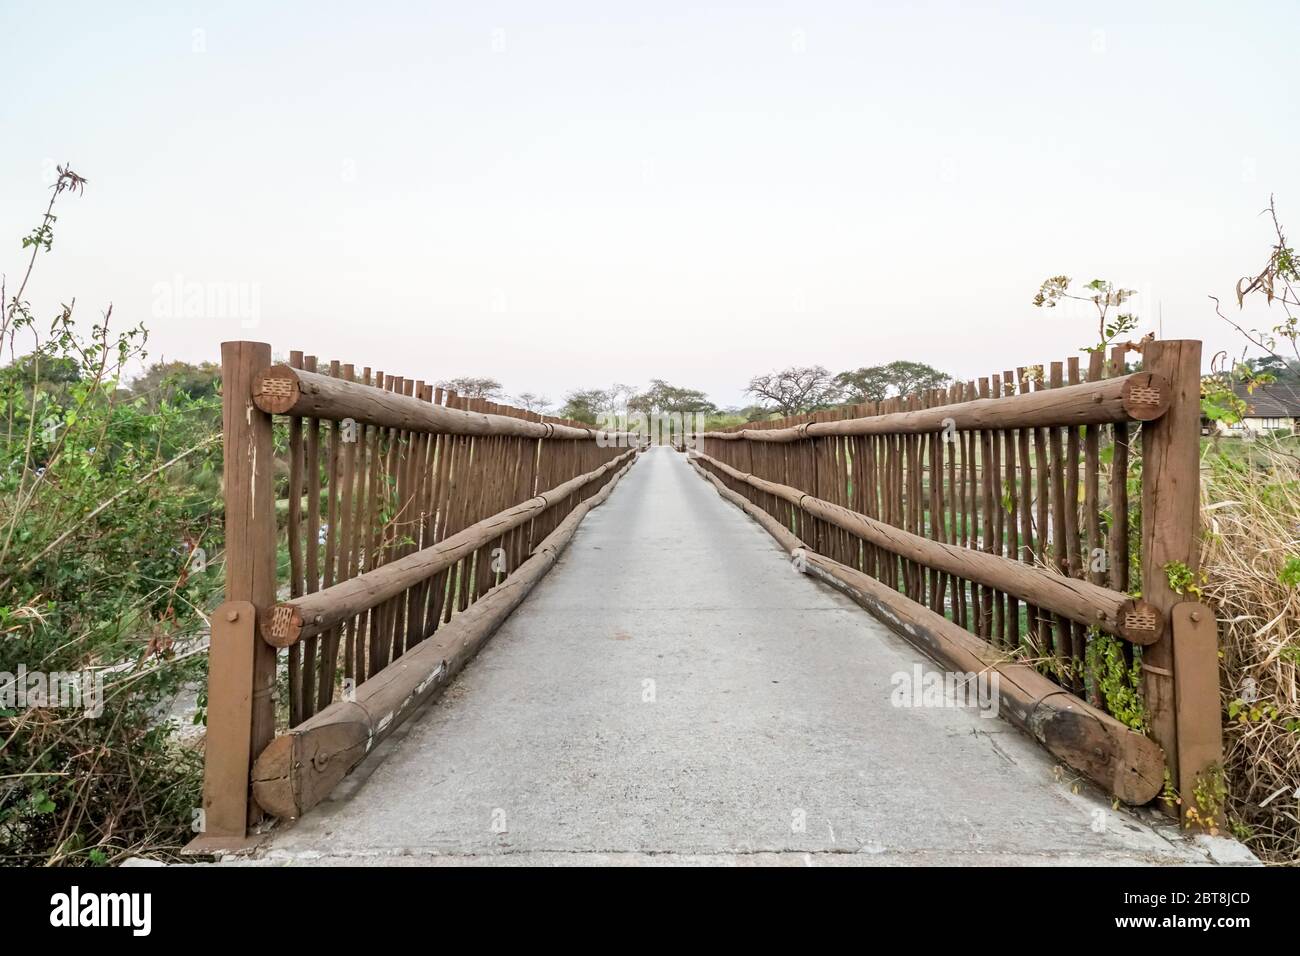 Pont rustique ou passerelle sur une rivière dans la campagne sud-africaine avec des côtés en bois et une vue infinie dans la distance Banque D'Images